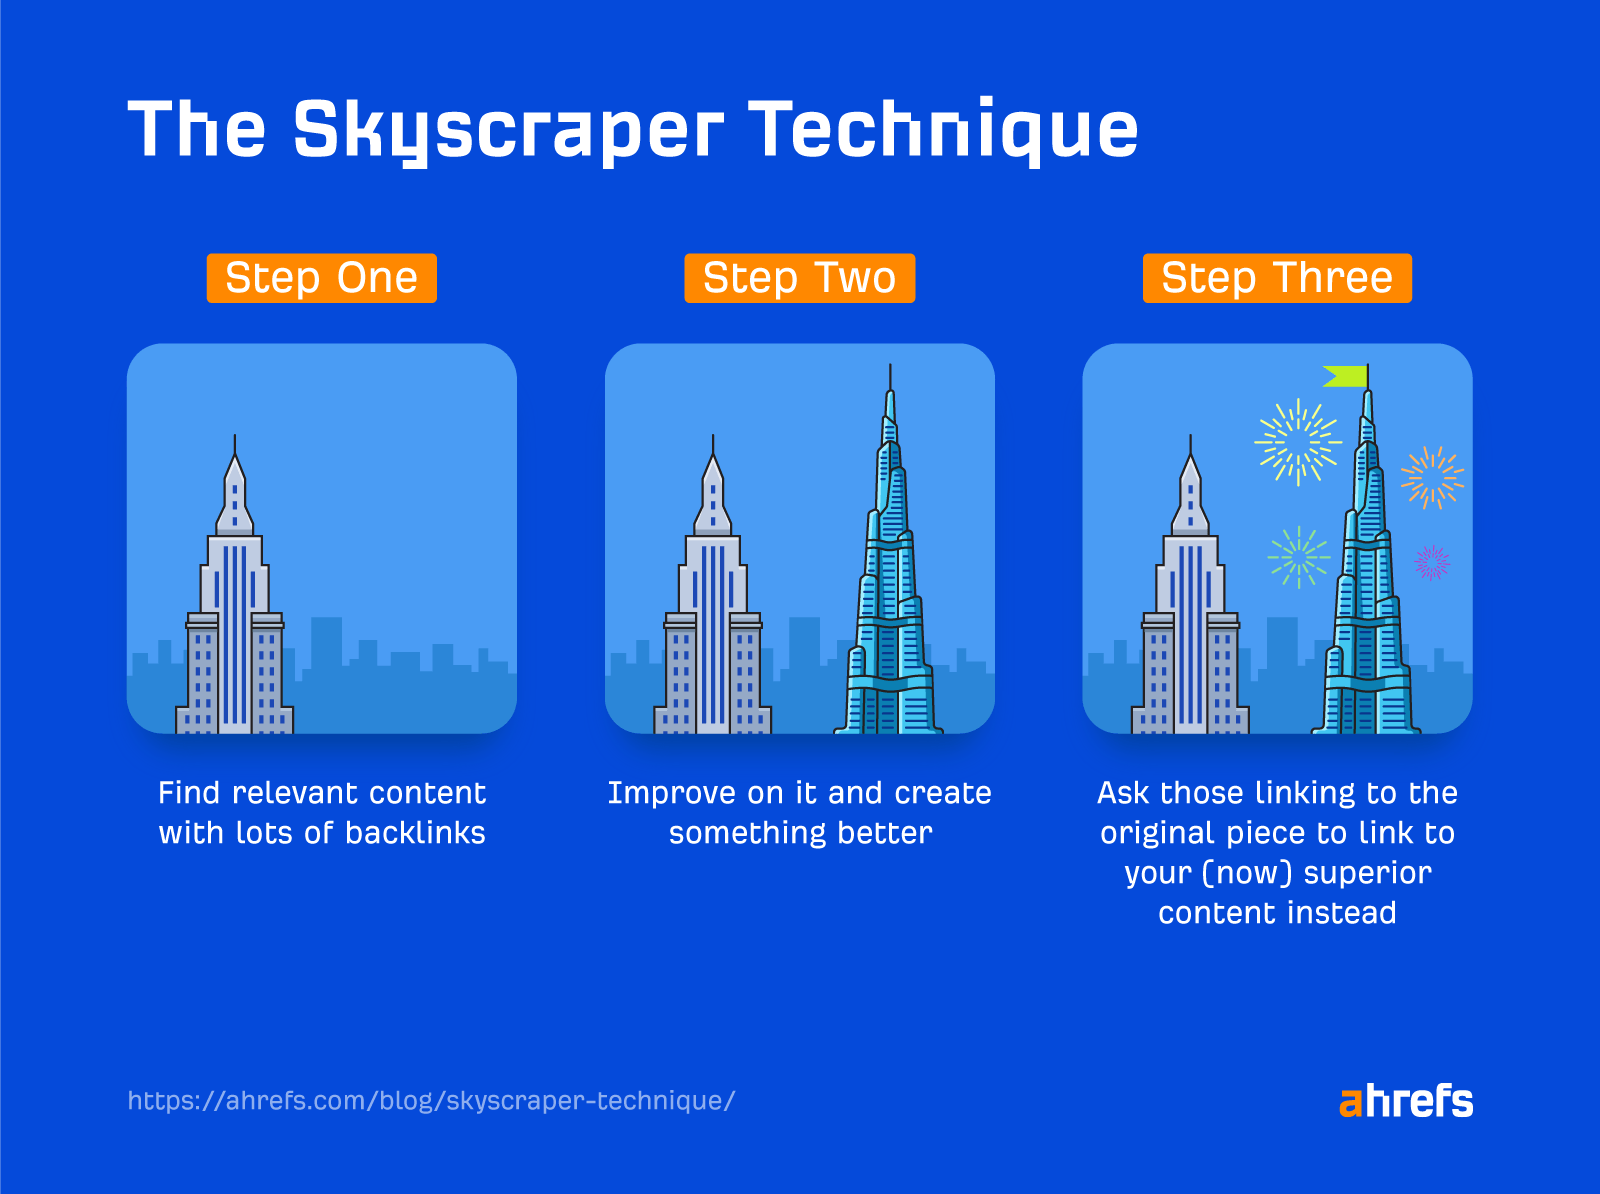 Three steps of the Skyscraper Technique